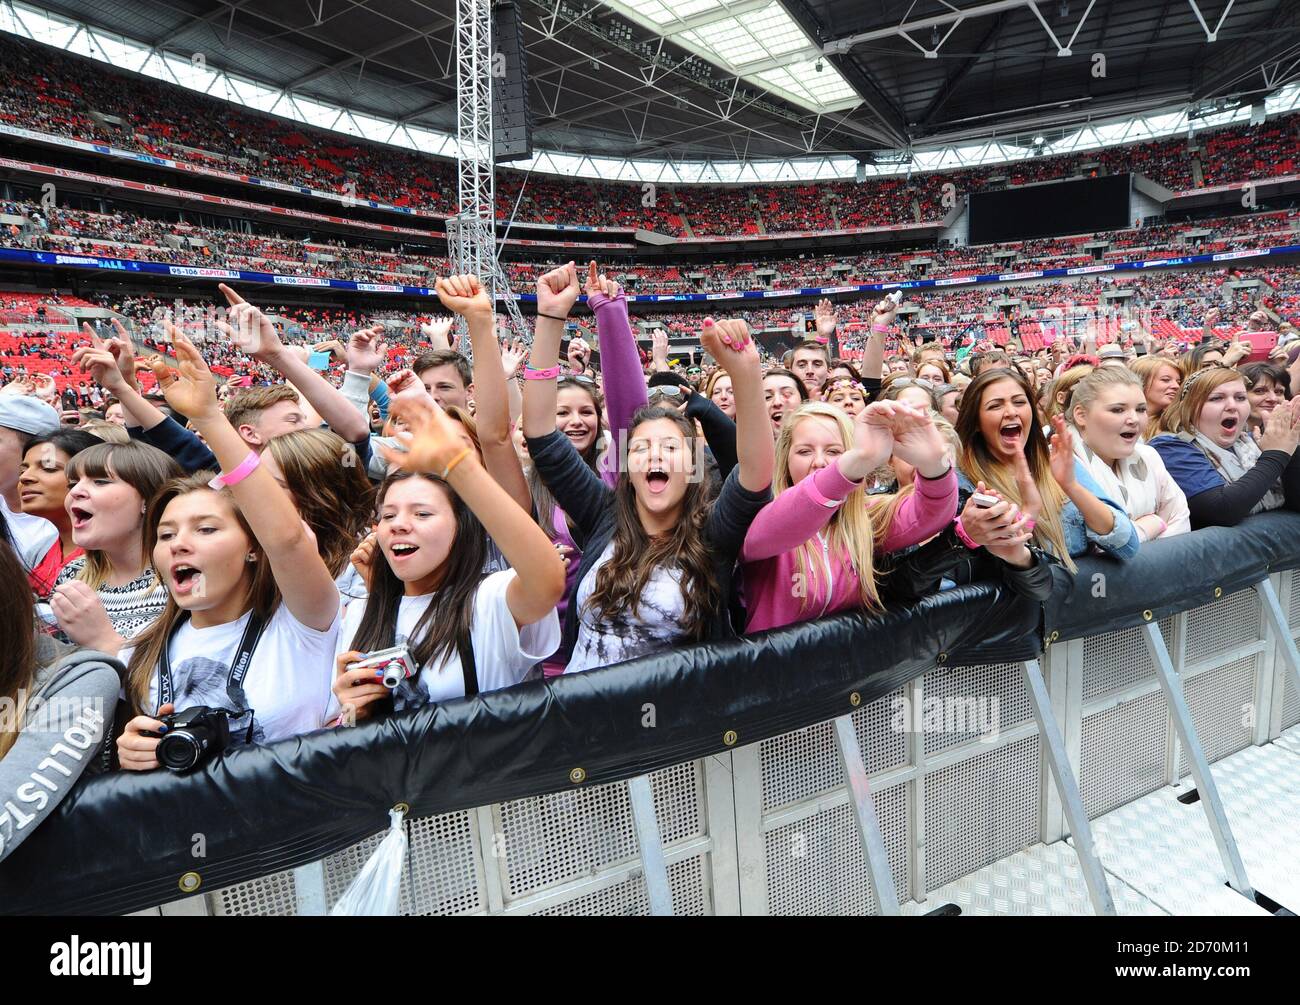 La foule lors du Summertime ball de Capital FM au stade Wembley, à Londres  Photo Stock - Alamy